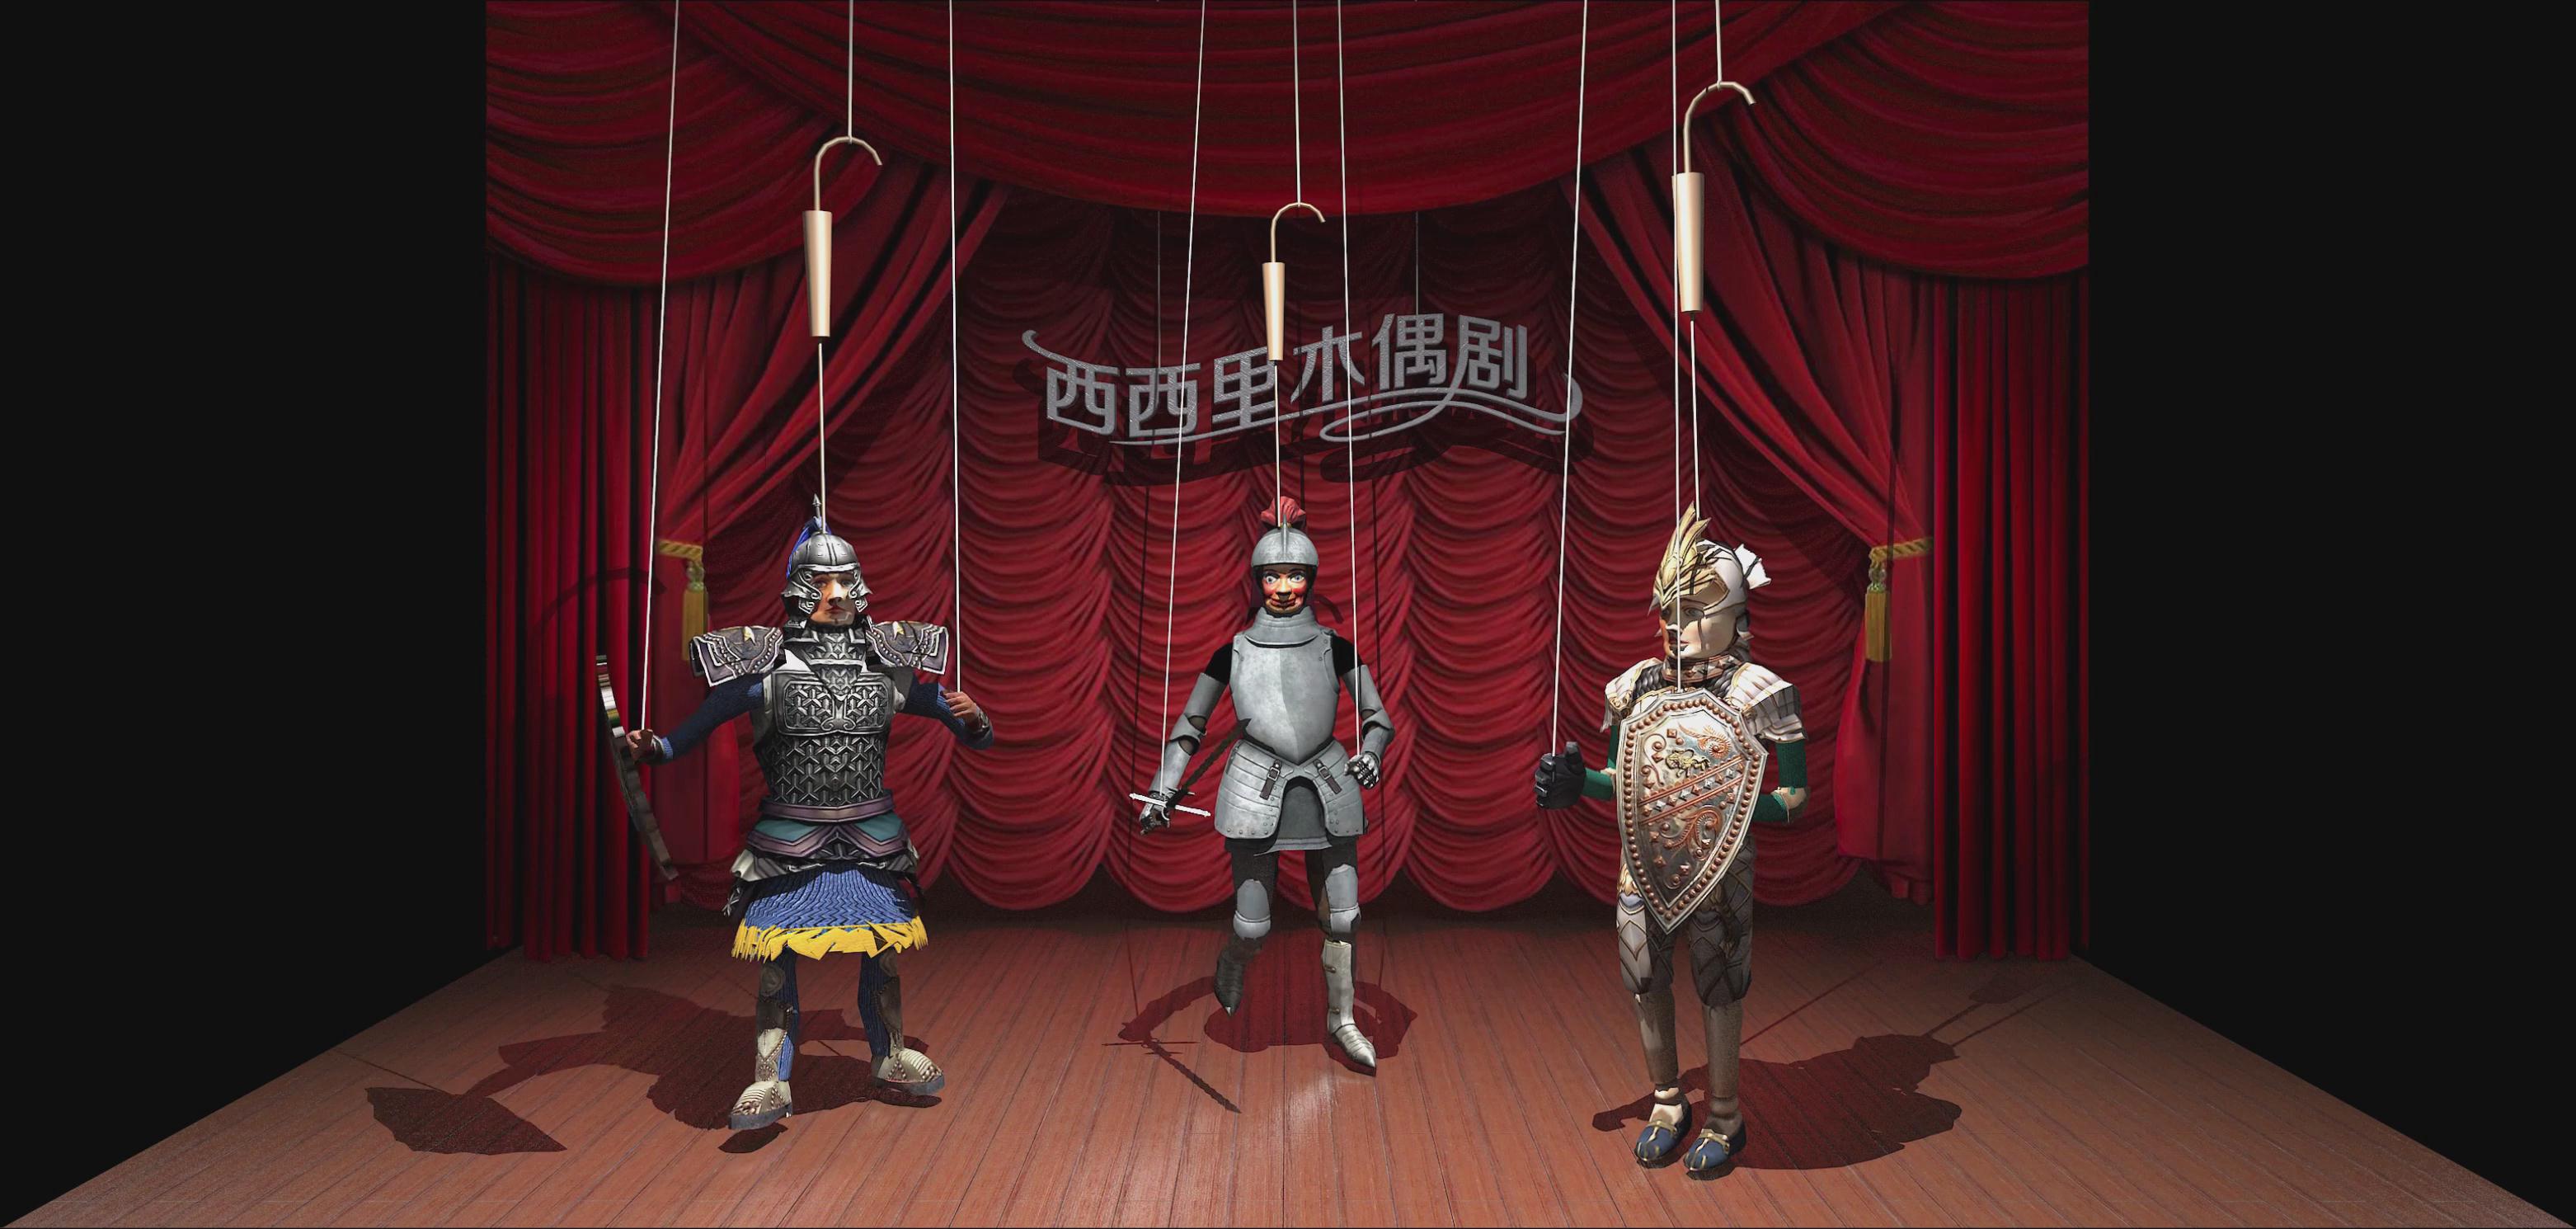 上海大世界西西里木偶劇折幕投影三維影片